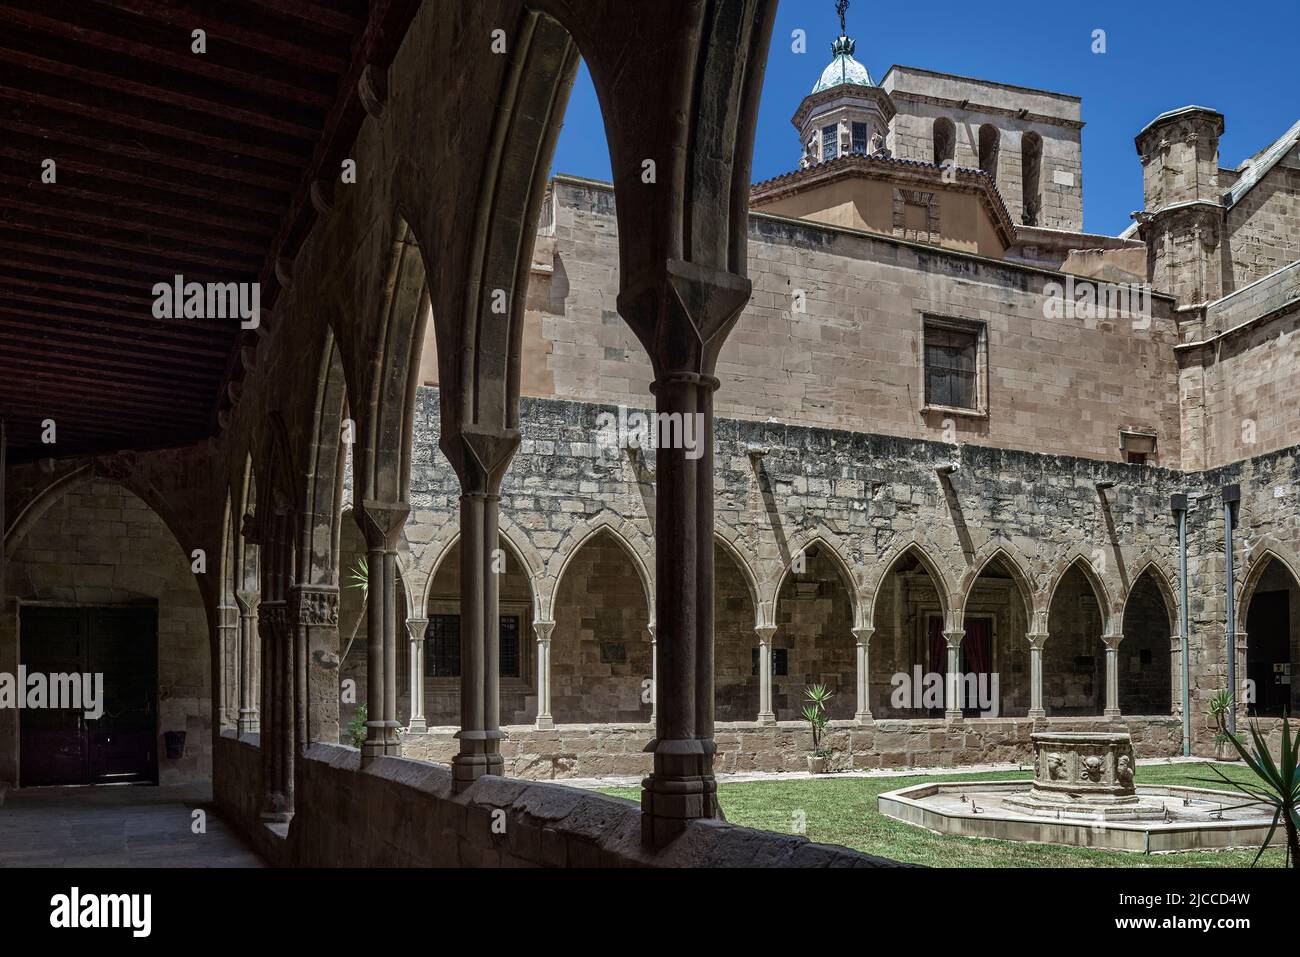 Cloître gothique catalan intérieur de la cathédrale basilique de Santa María de Tortosa datant du 14th siècle, province de Tarragone, Catalogne, Espagne, Europe Banque D'Images